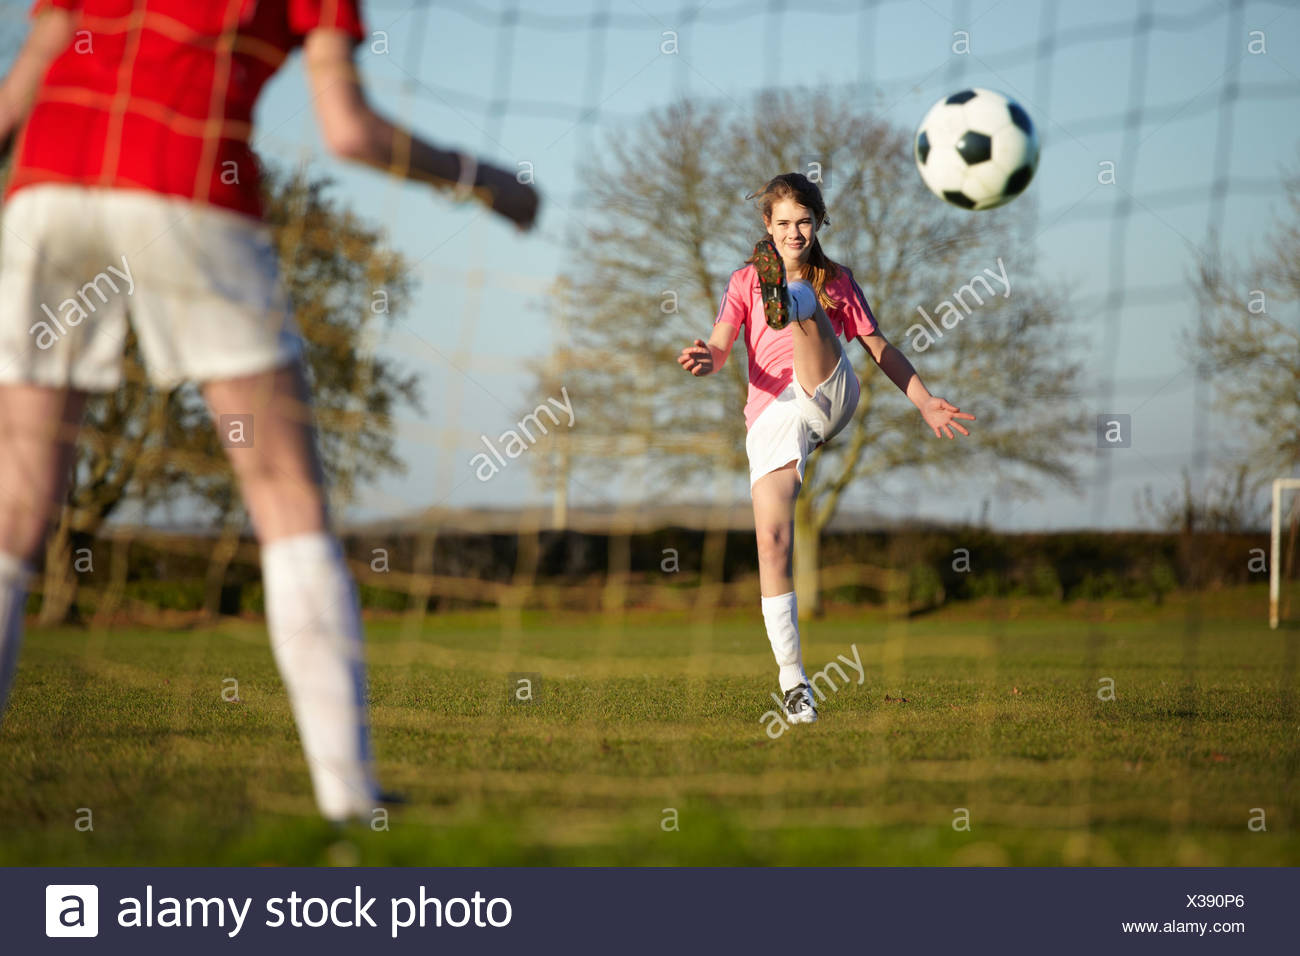 Girl Kicking Football Ball Into Goal Stock Photo Alamy